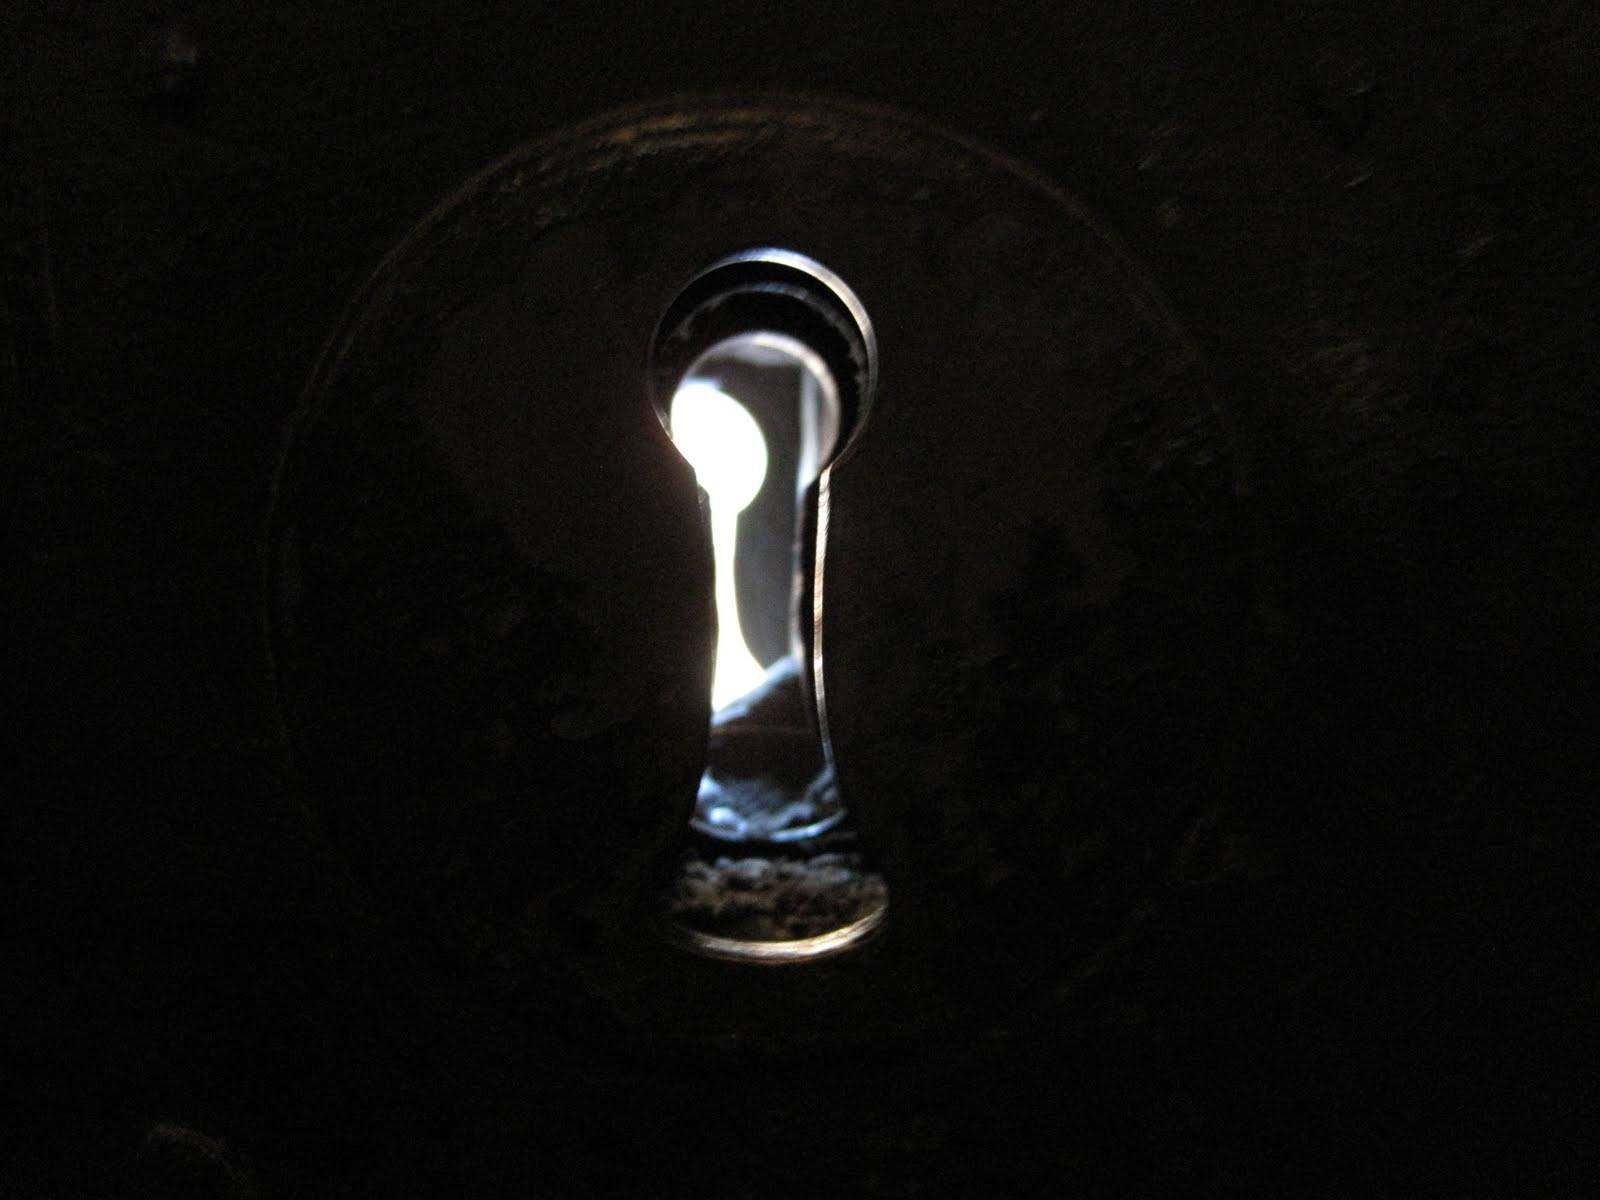 Keyhole peeking